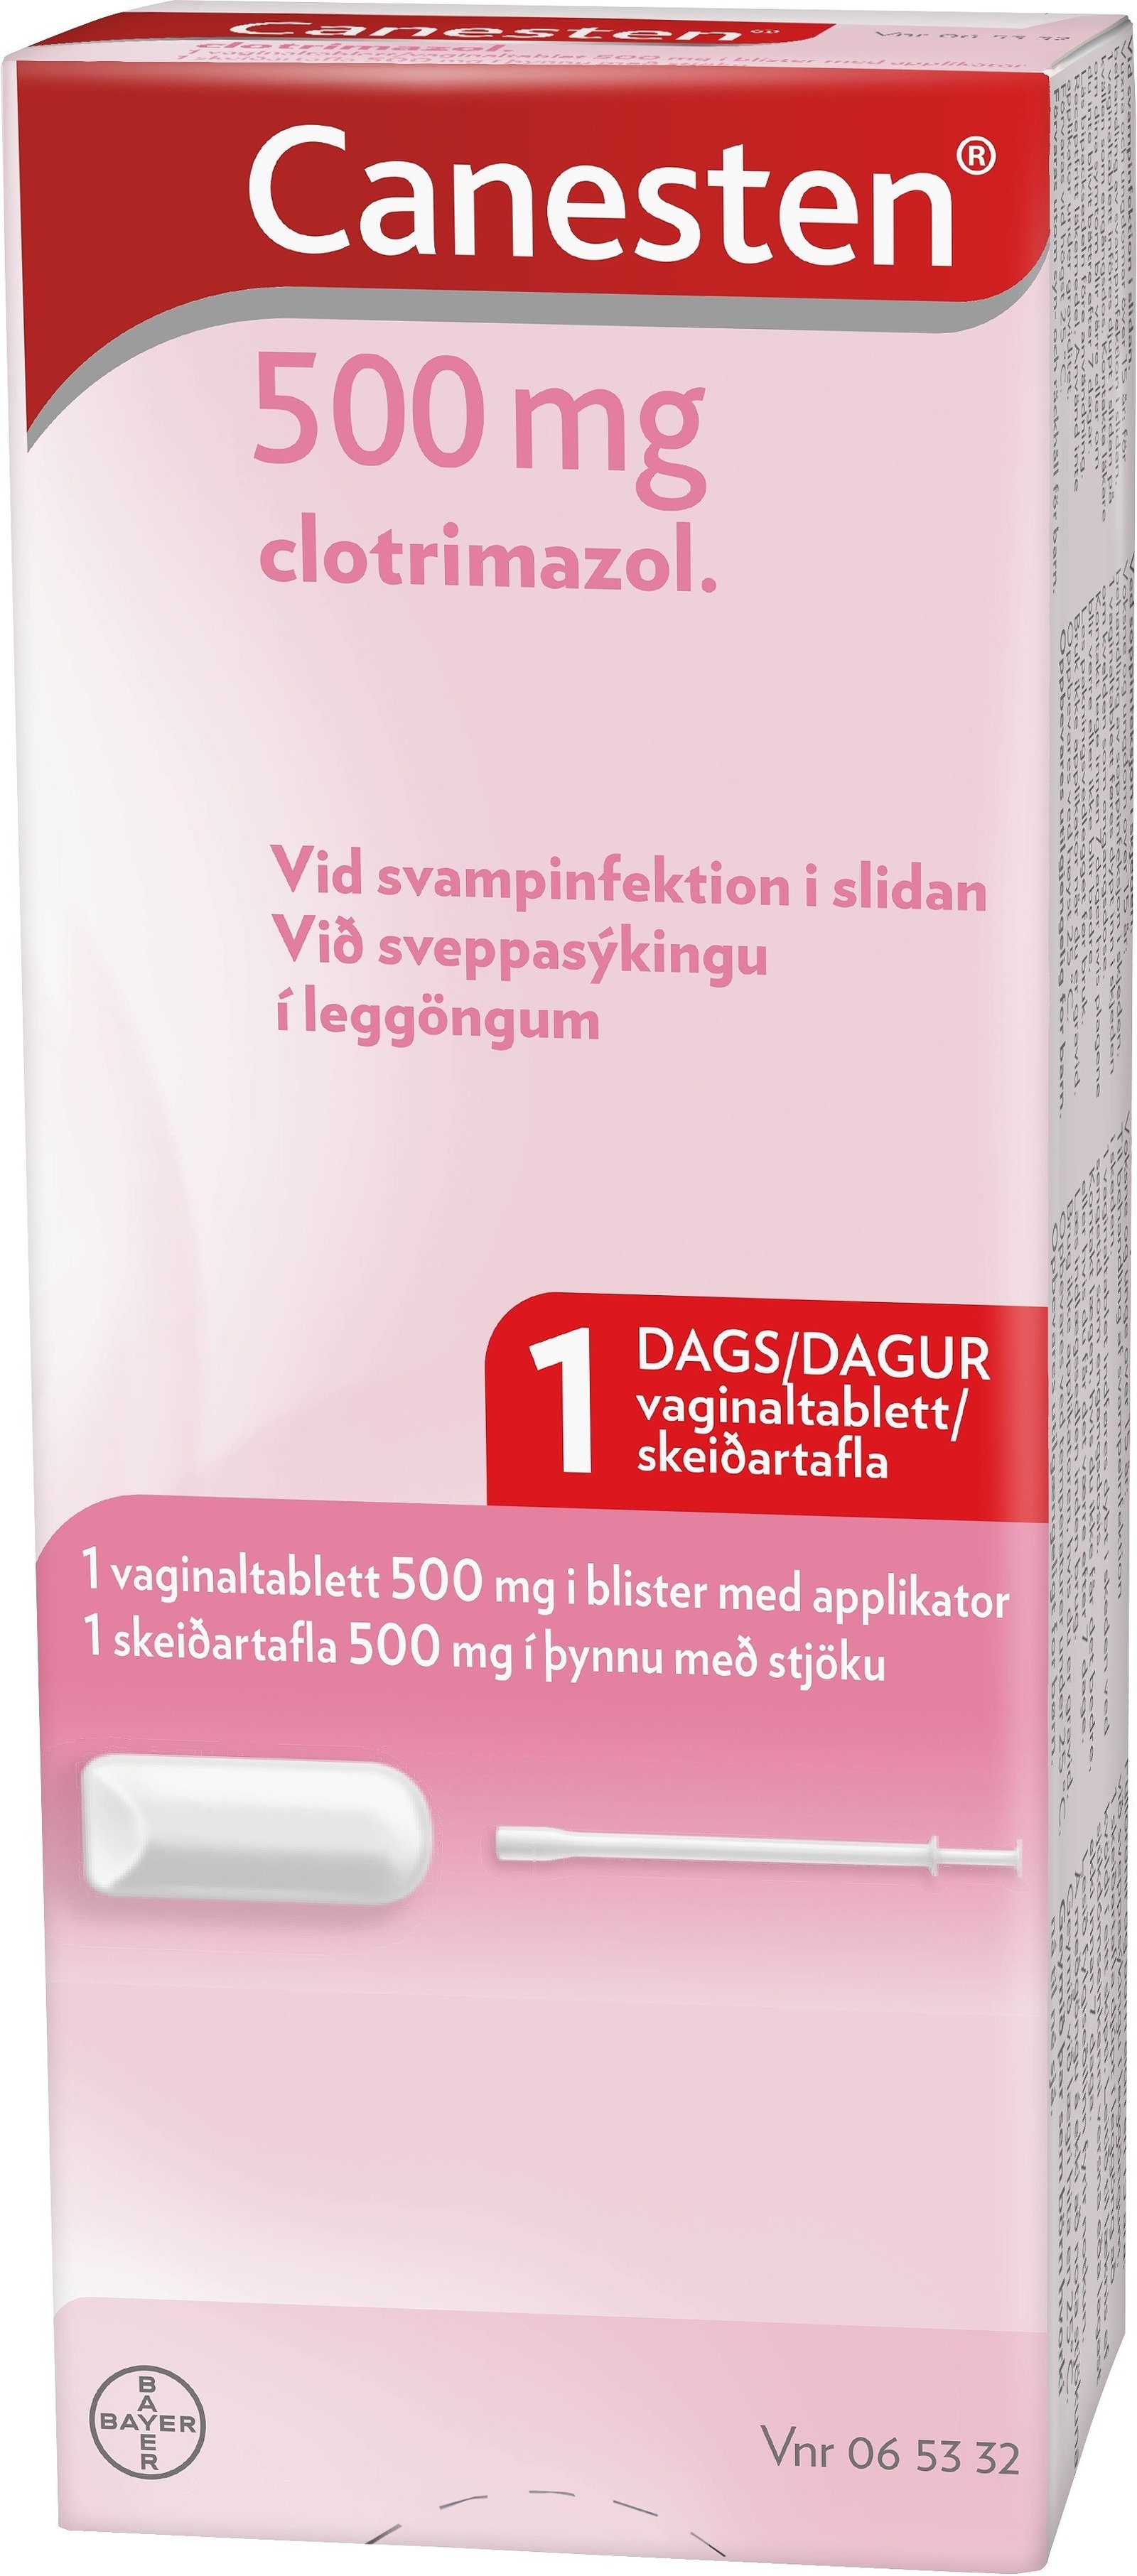 Canesten Vaginaltablett 500 mg 1 st